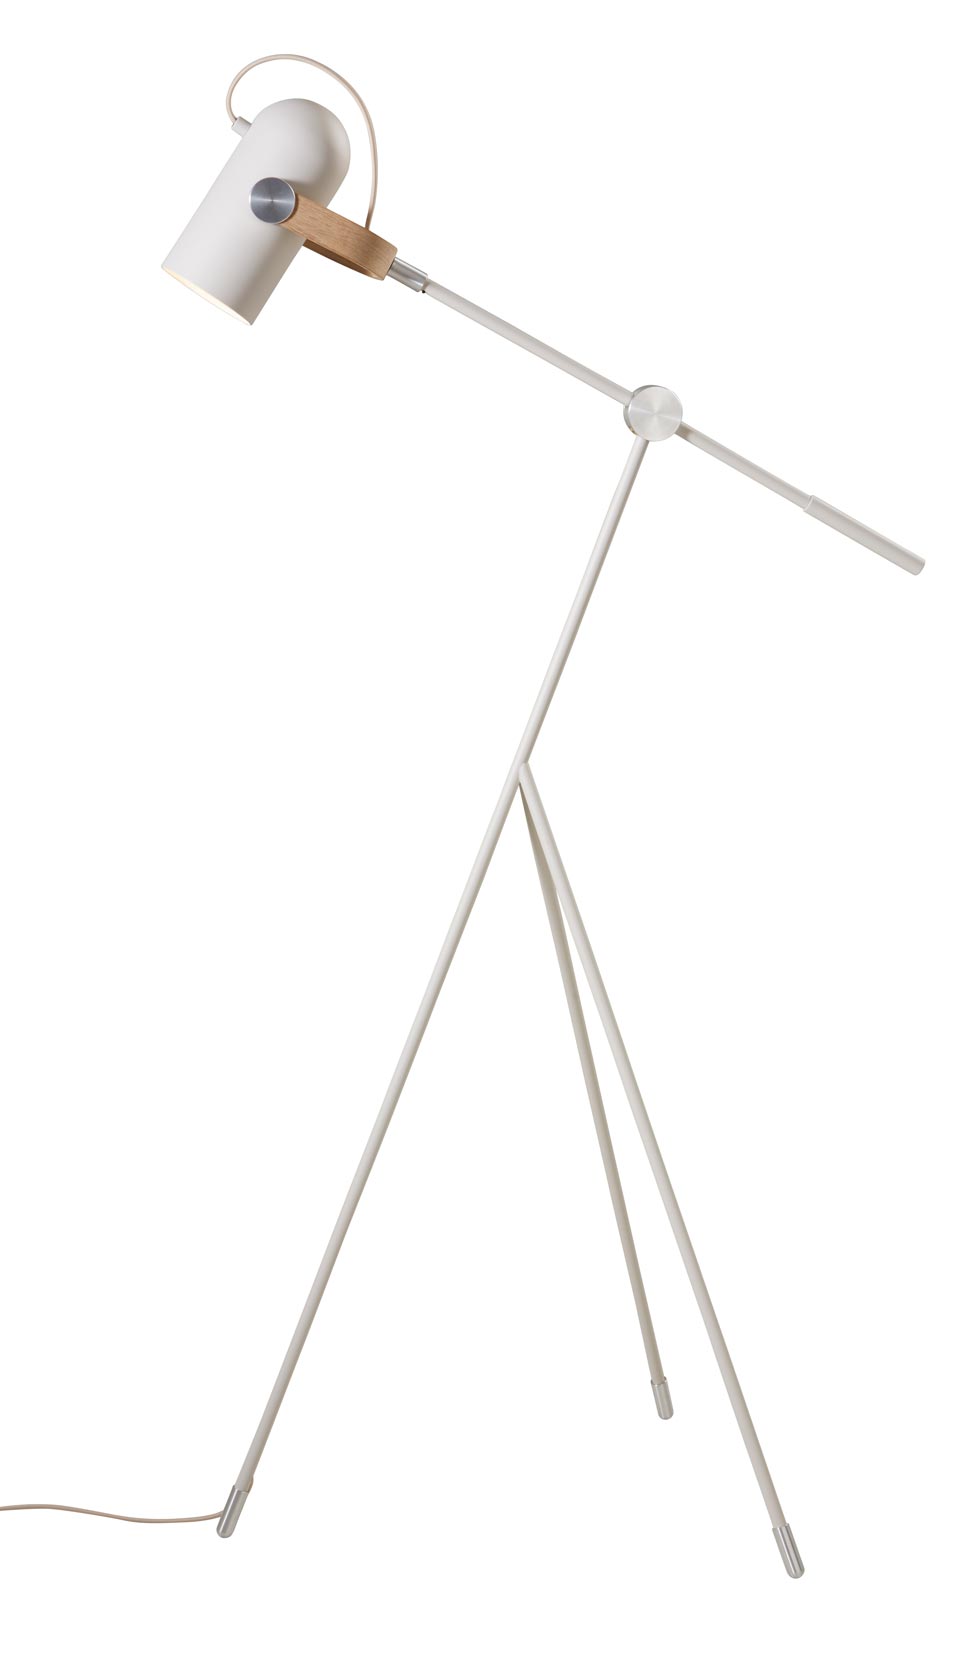 Cache lampadaire en cloche noire: Le Klint, design scandinave, papier plié  - Réf. 20090140 - mobile